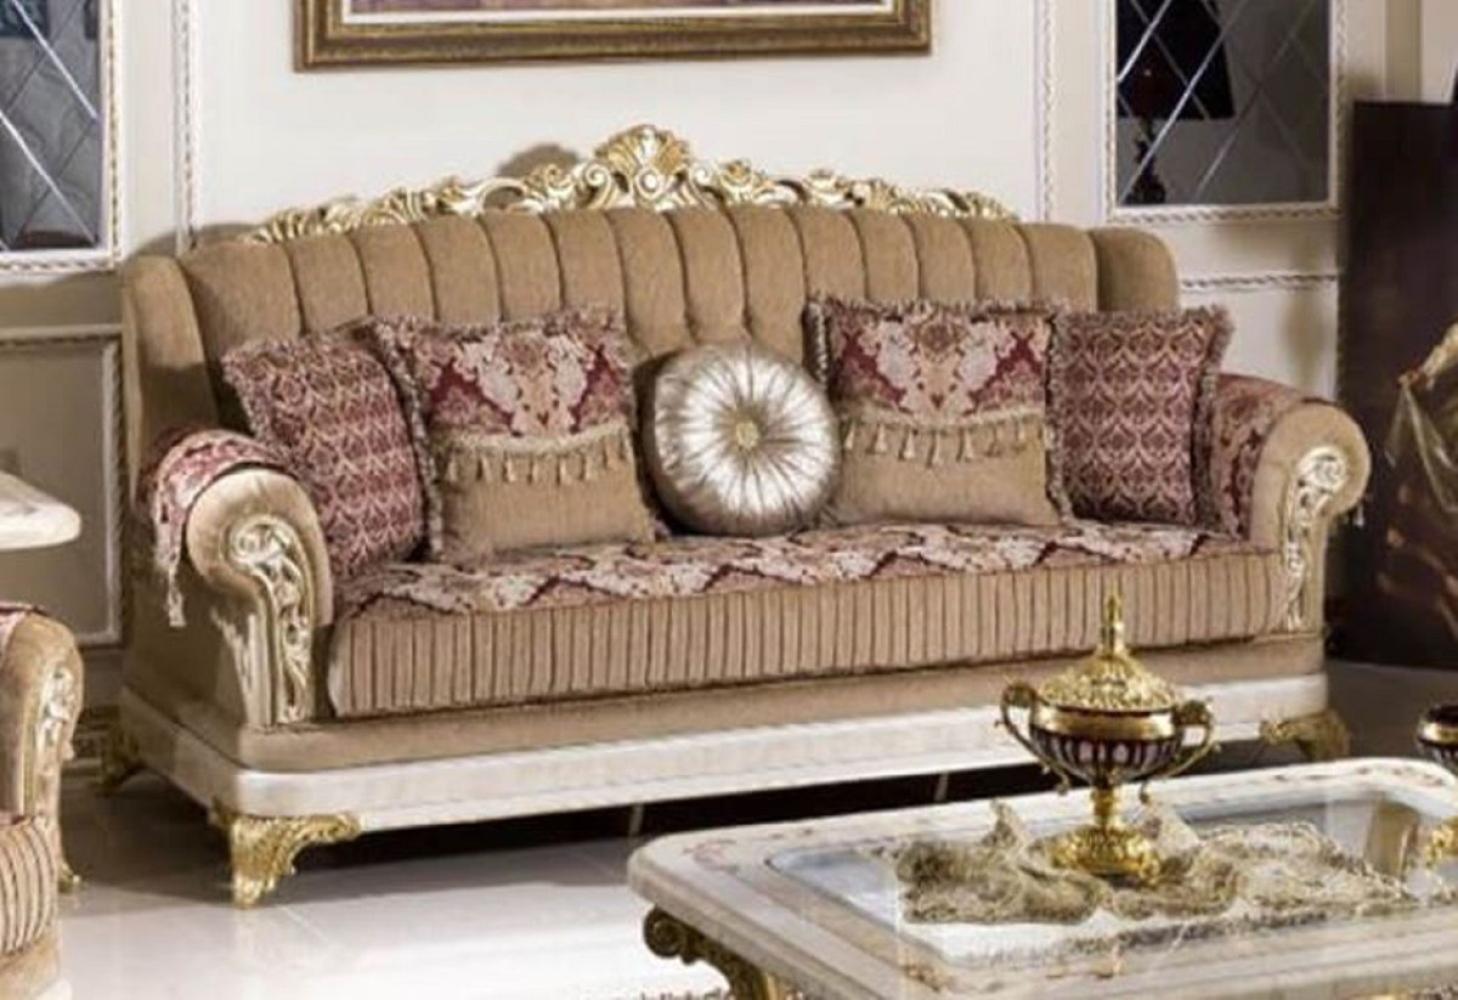 Casa Padrino Luxus Barock Sofa Braun / Bordeauxrot / Weiß / Gold - Prunkvolles Wohnzimmer Sofa mit elegantem Muster - Luxus Wohnzimmer Möbel im Barockstil - Barock Möbel - Barock Einrichtung Bild 1